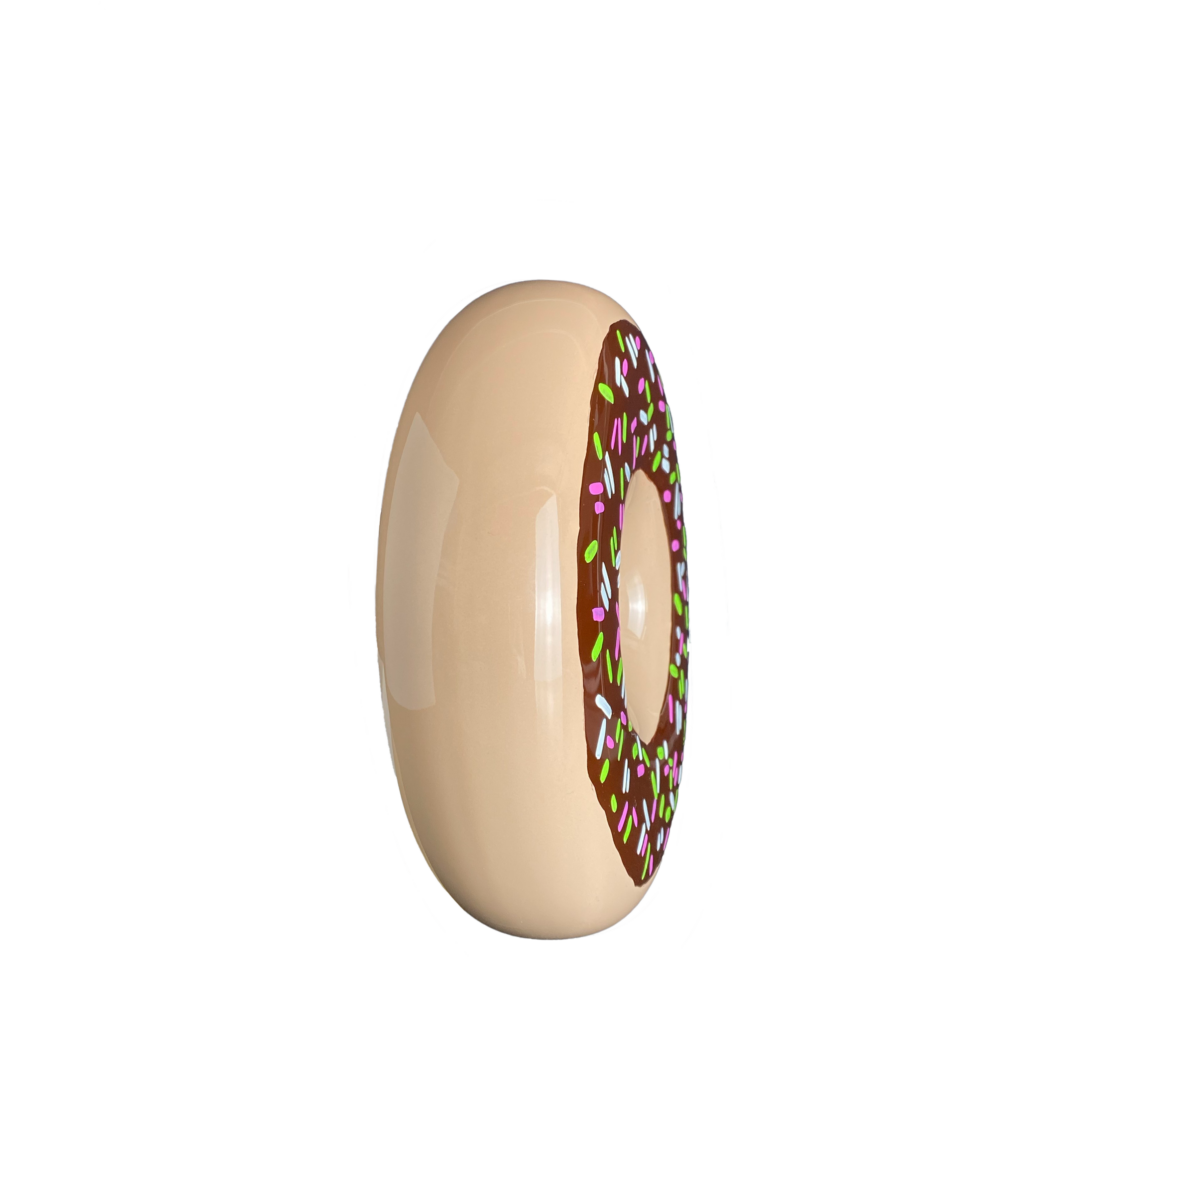 umidificatore hummi donut a forma di ciambella dipinto a mano visto di profilo